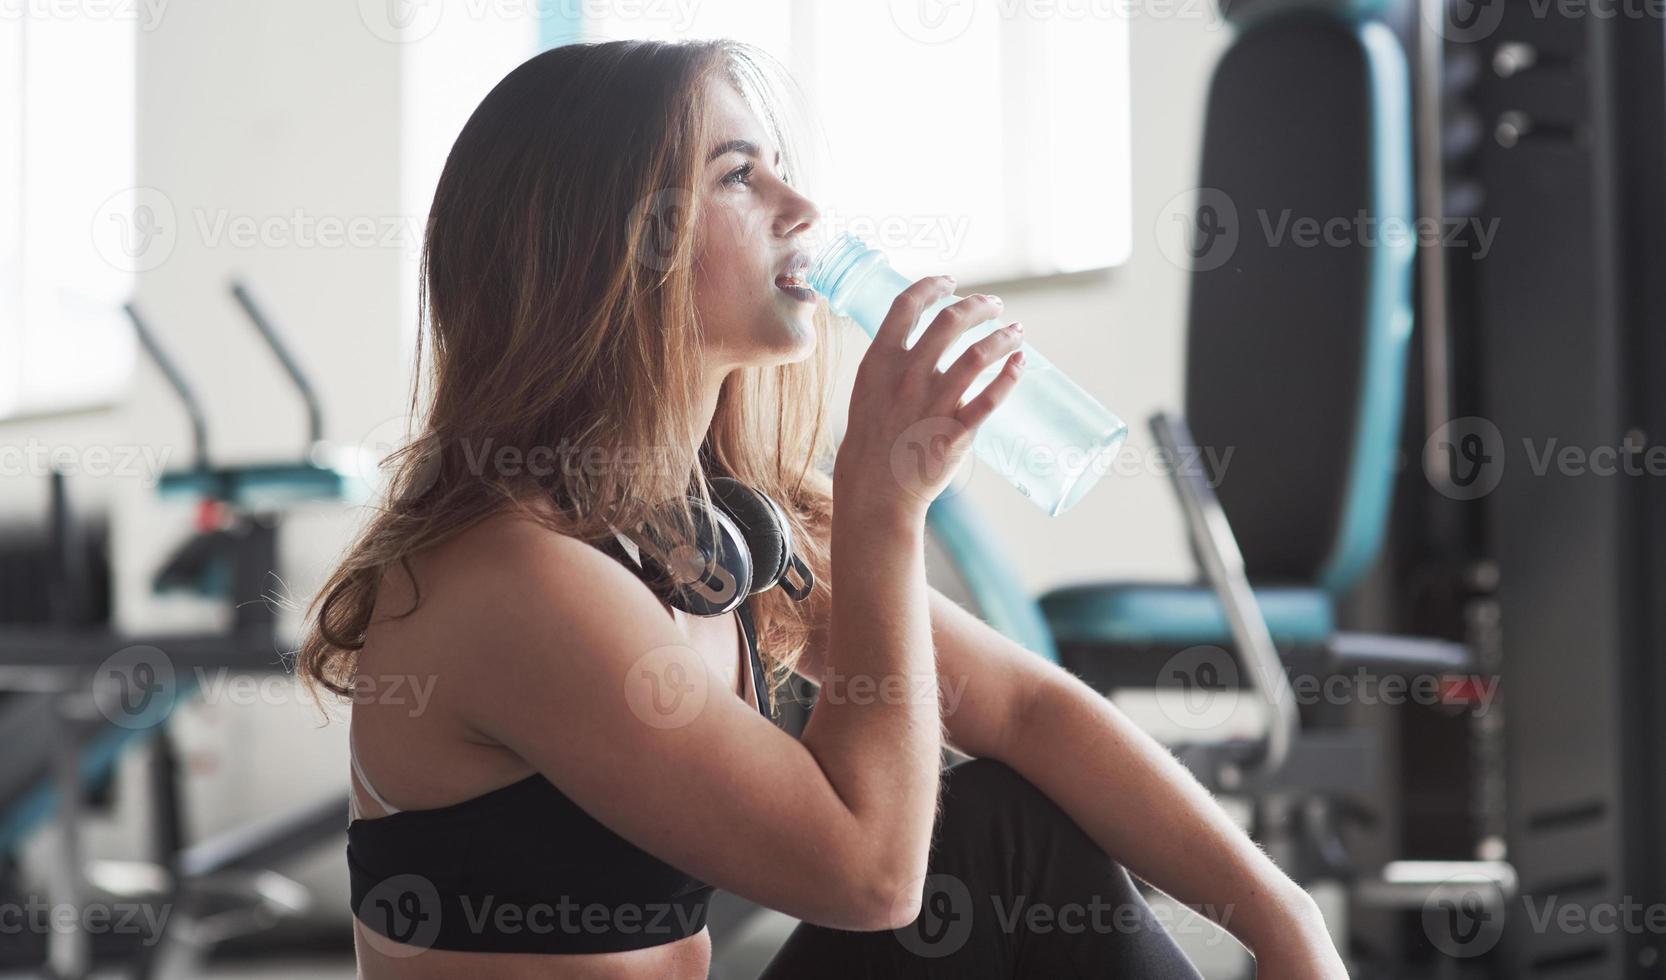 hora de beber água. foto de uma linda loira na academia em seu horário de fim de semana